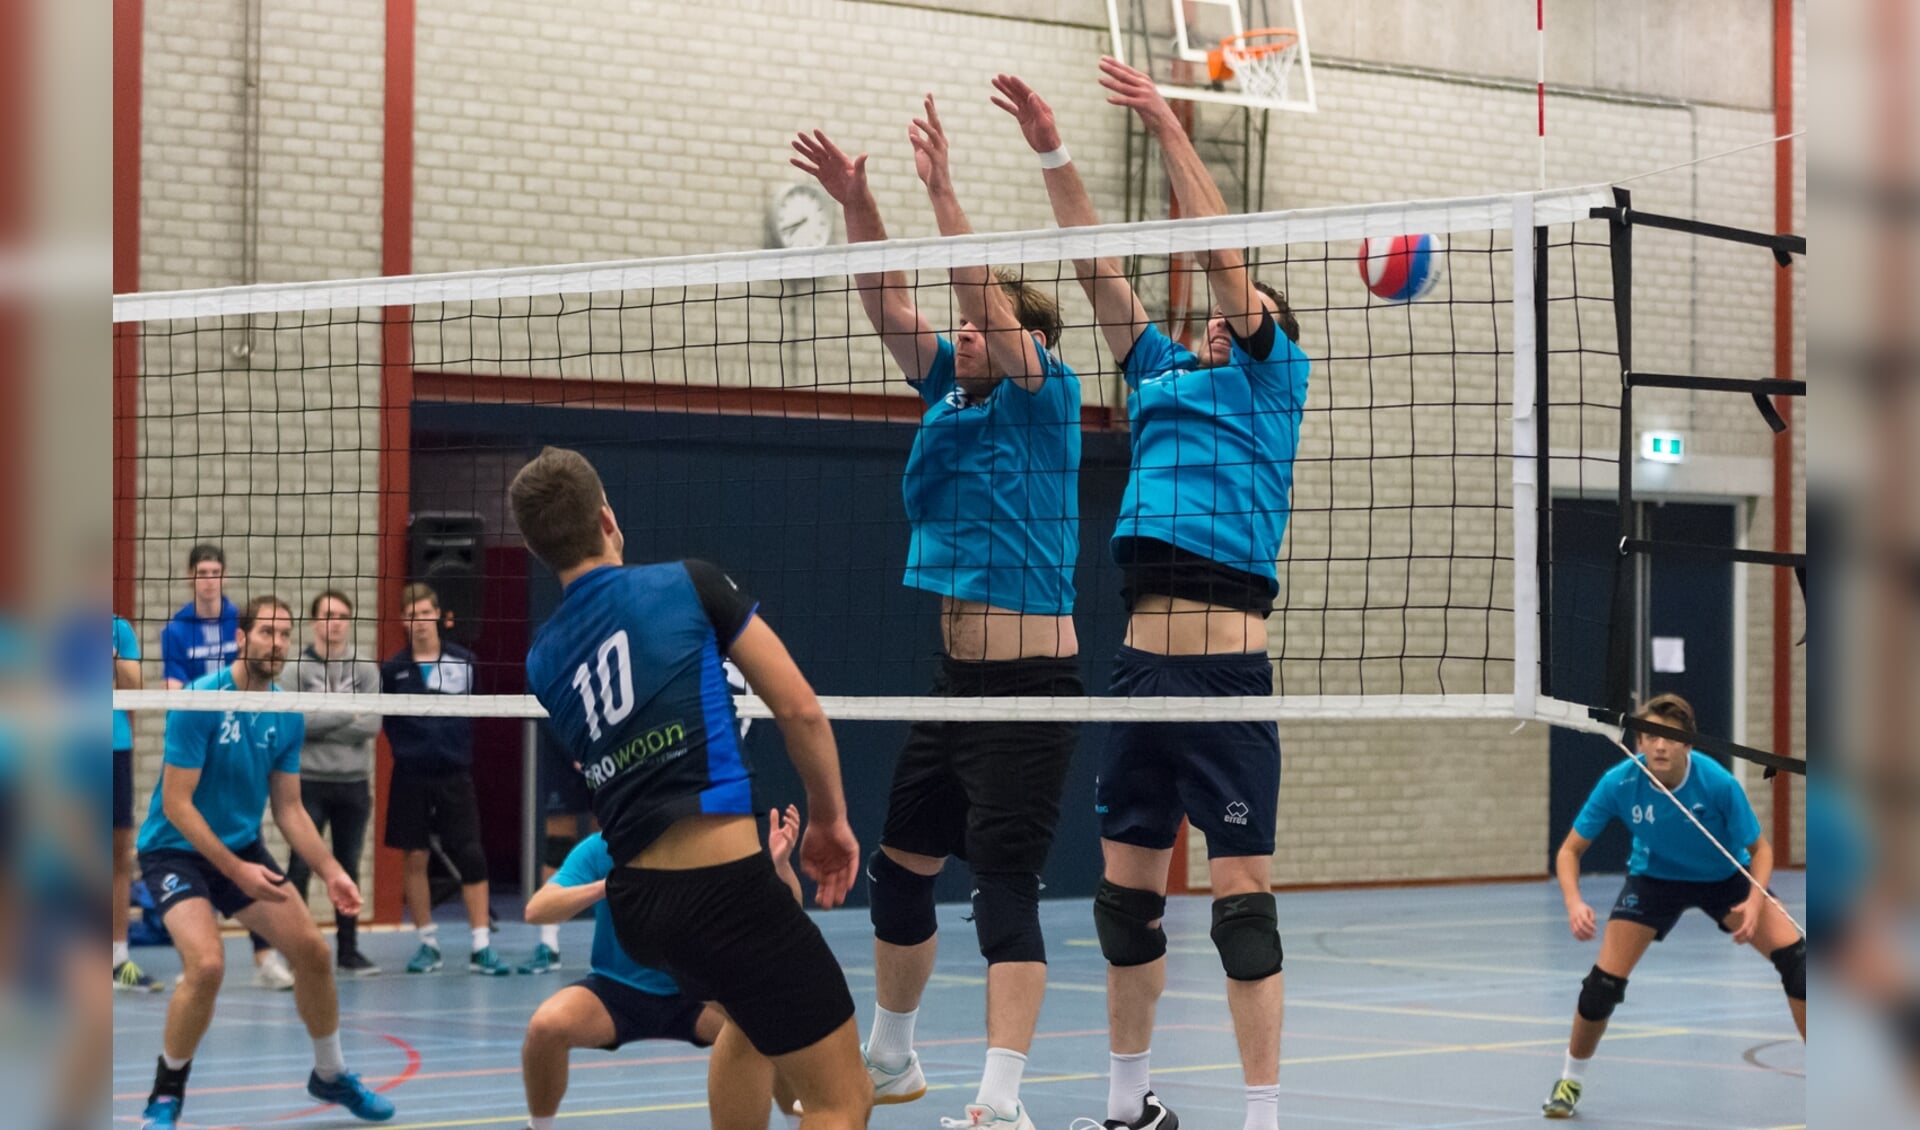 Volle winst van Skunk tegen Volley Tilburg.